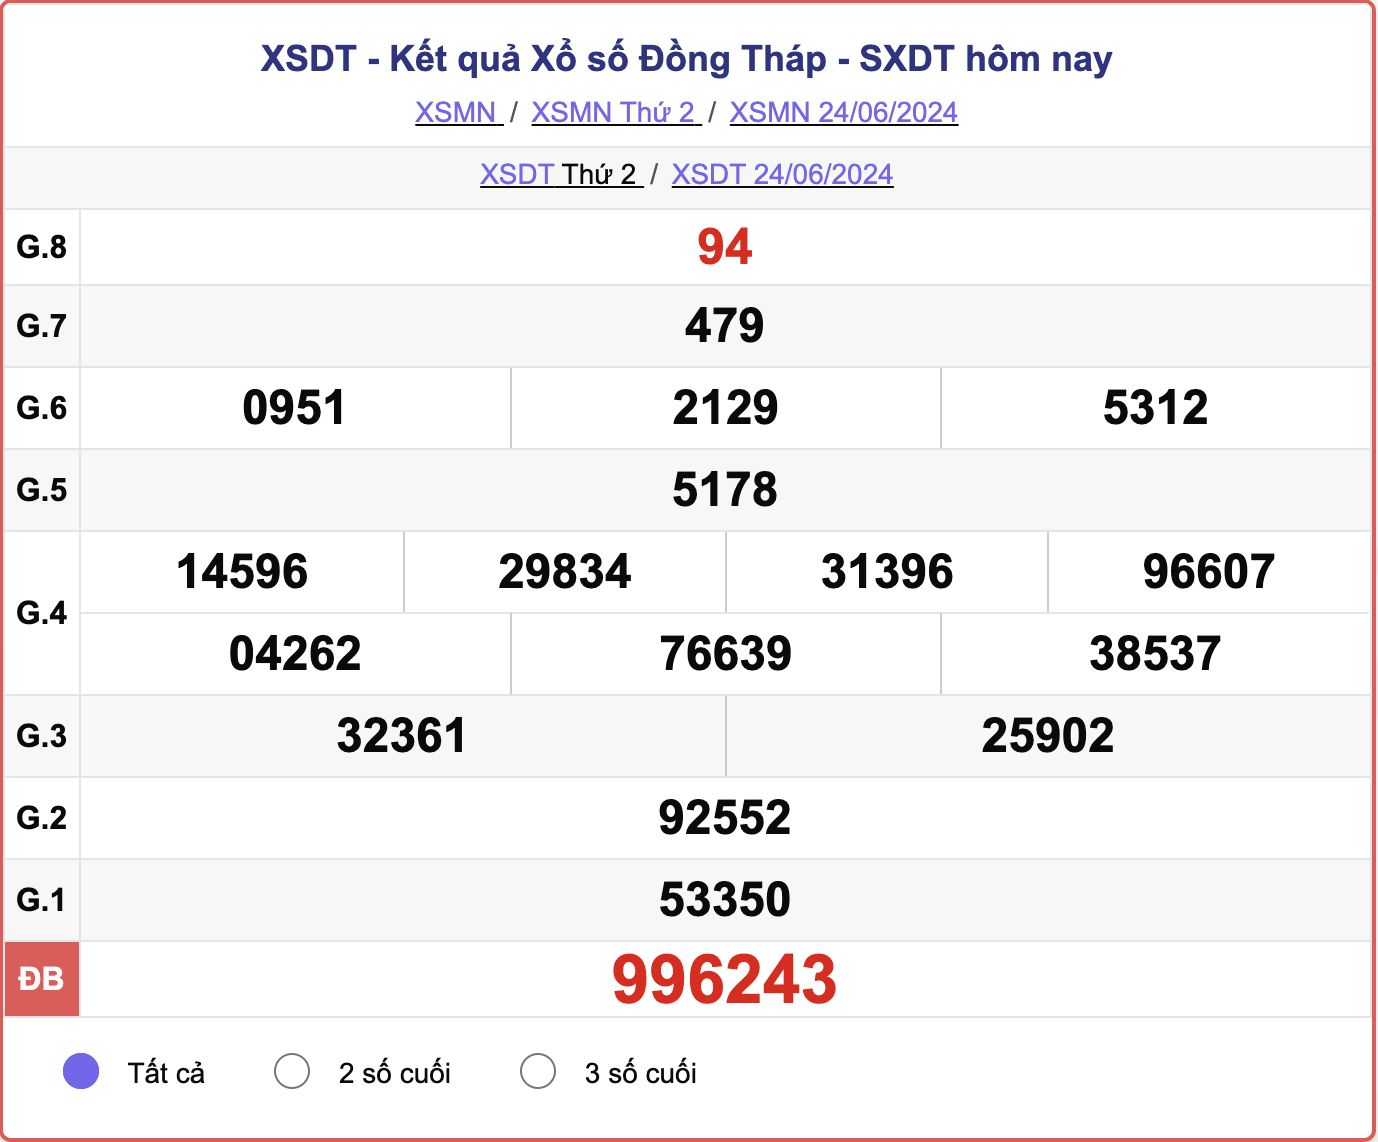 XSDT 24/6, kết quả xổ số Đồng Tháp hôm nay 24/6/2024.